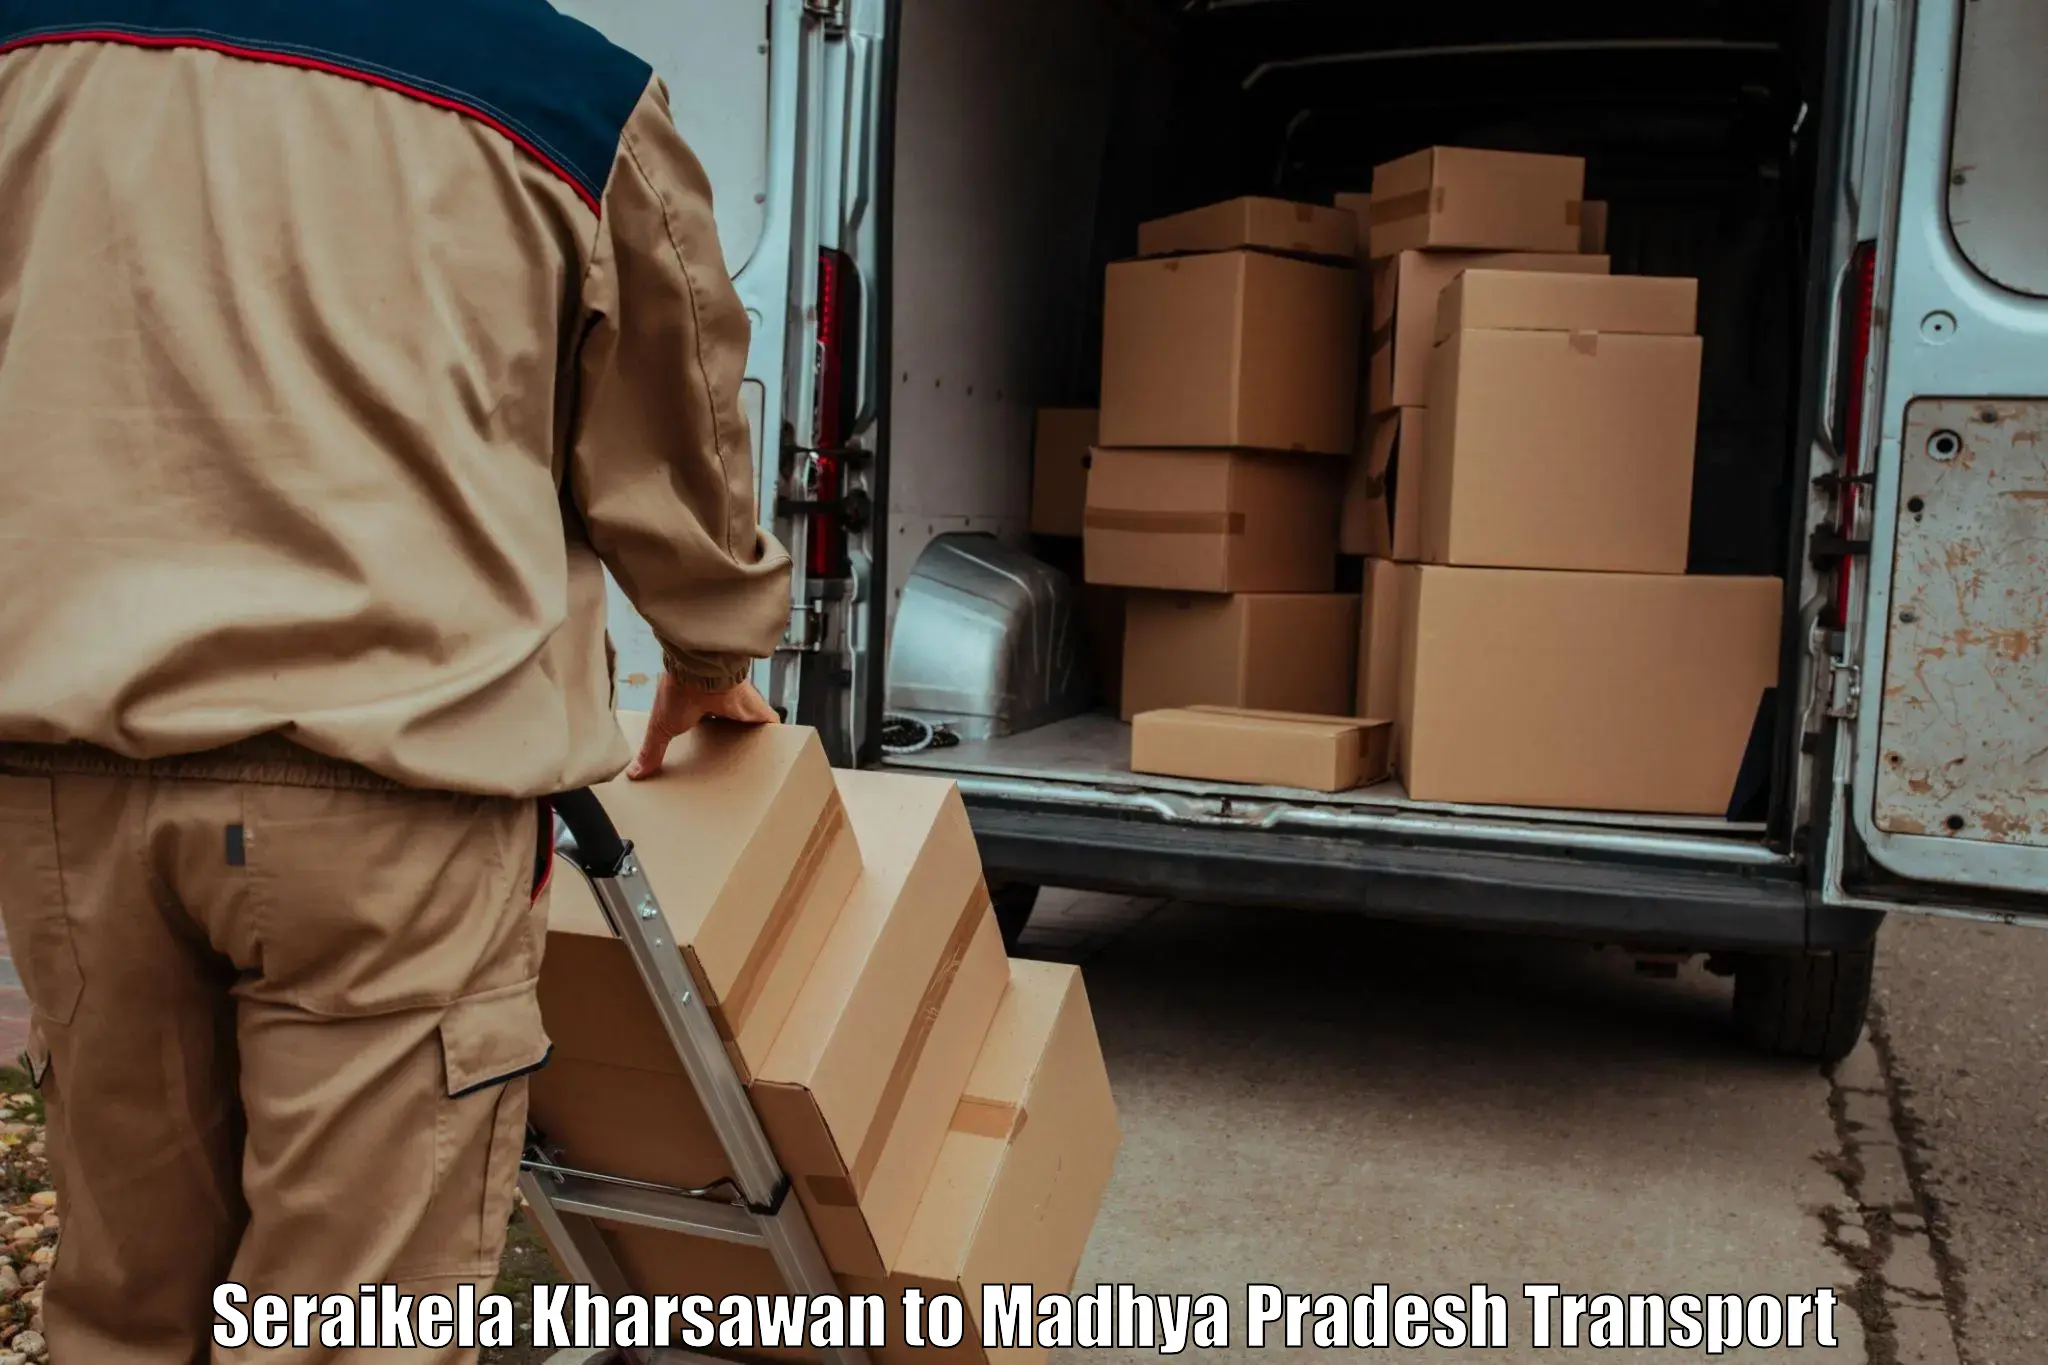 Furniture transport service Seraikela Kharsawan to Jaora